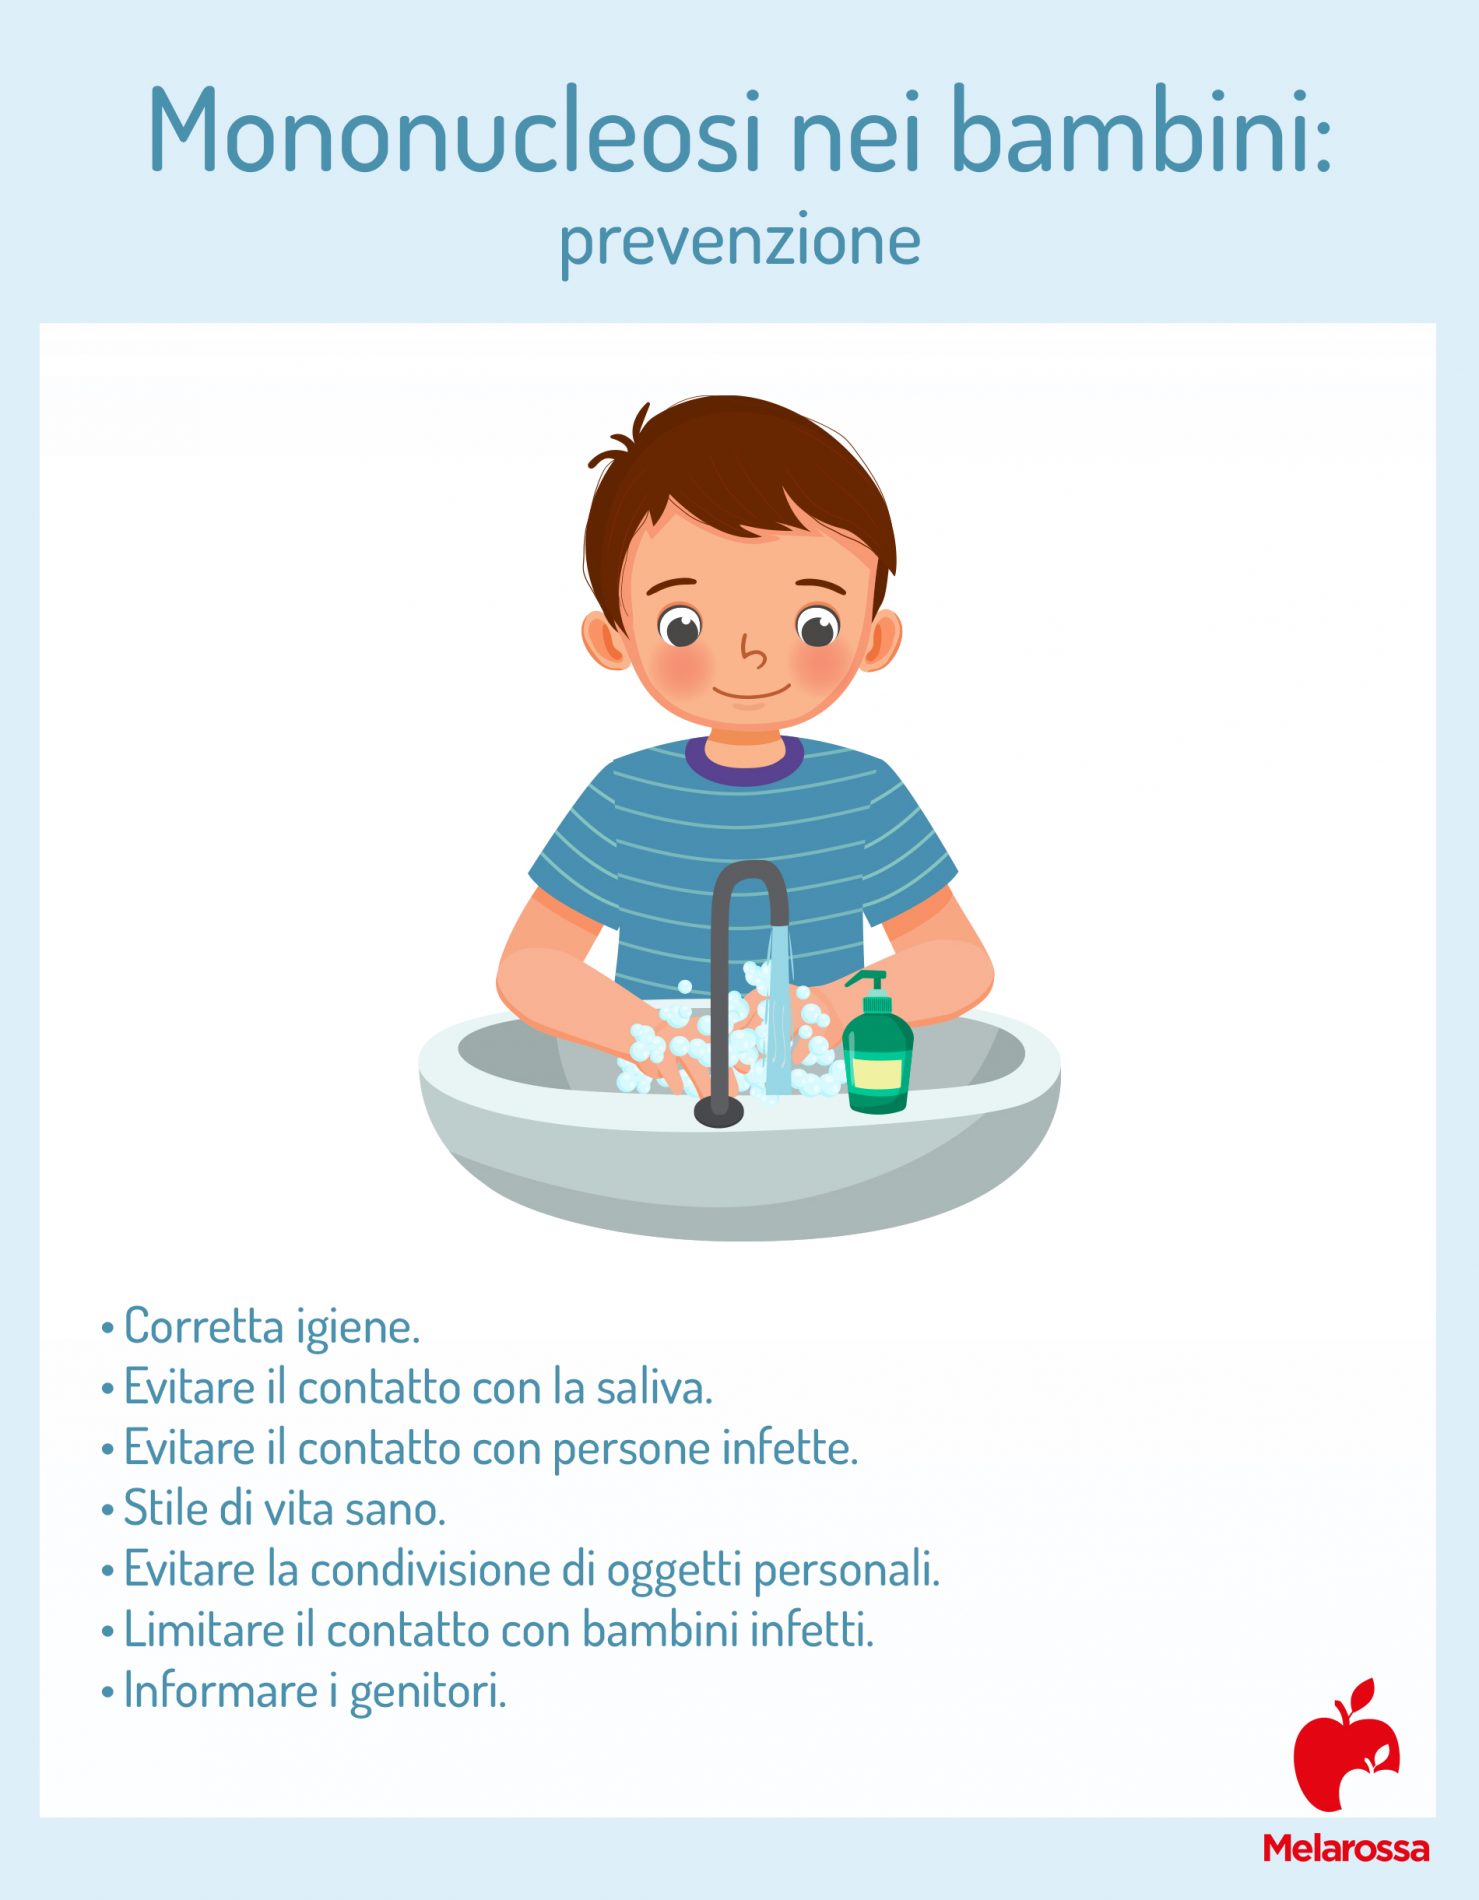 mononucleosi nei bambini: prevenzione